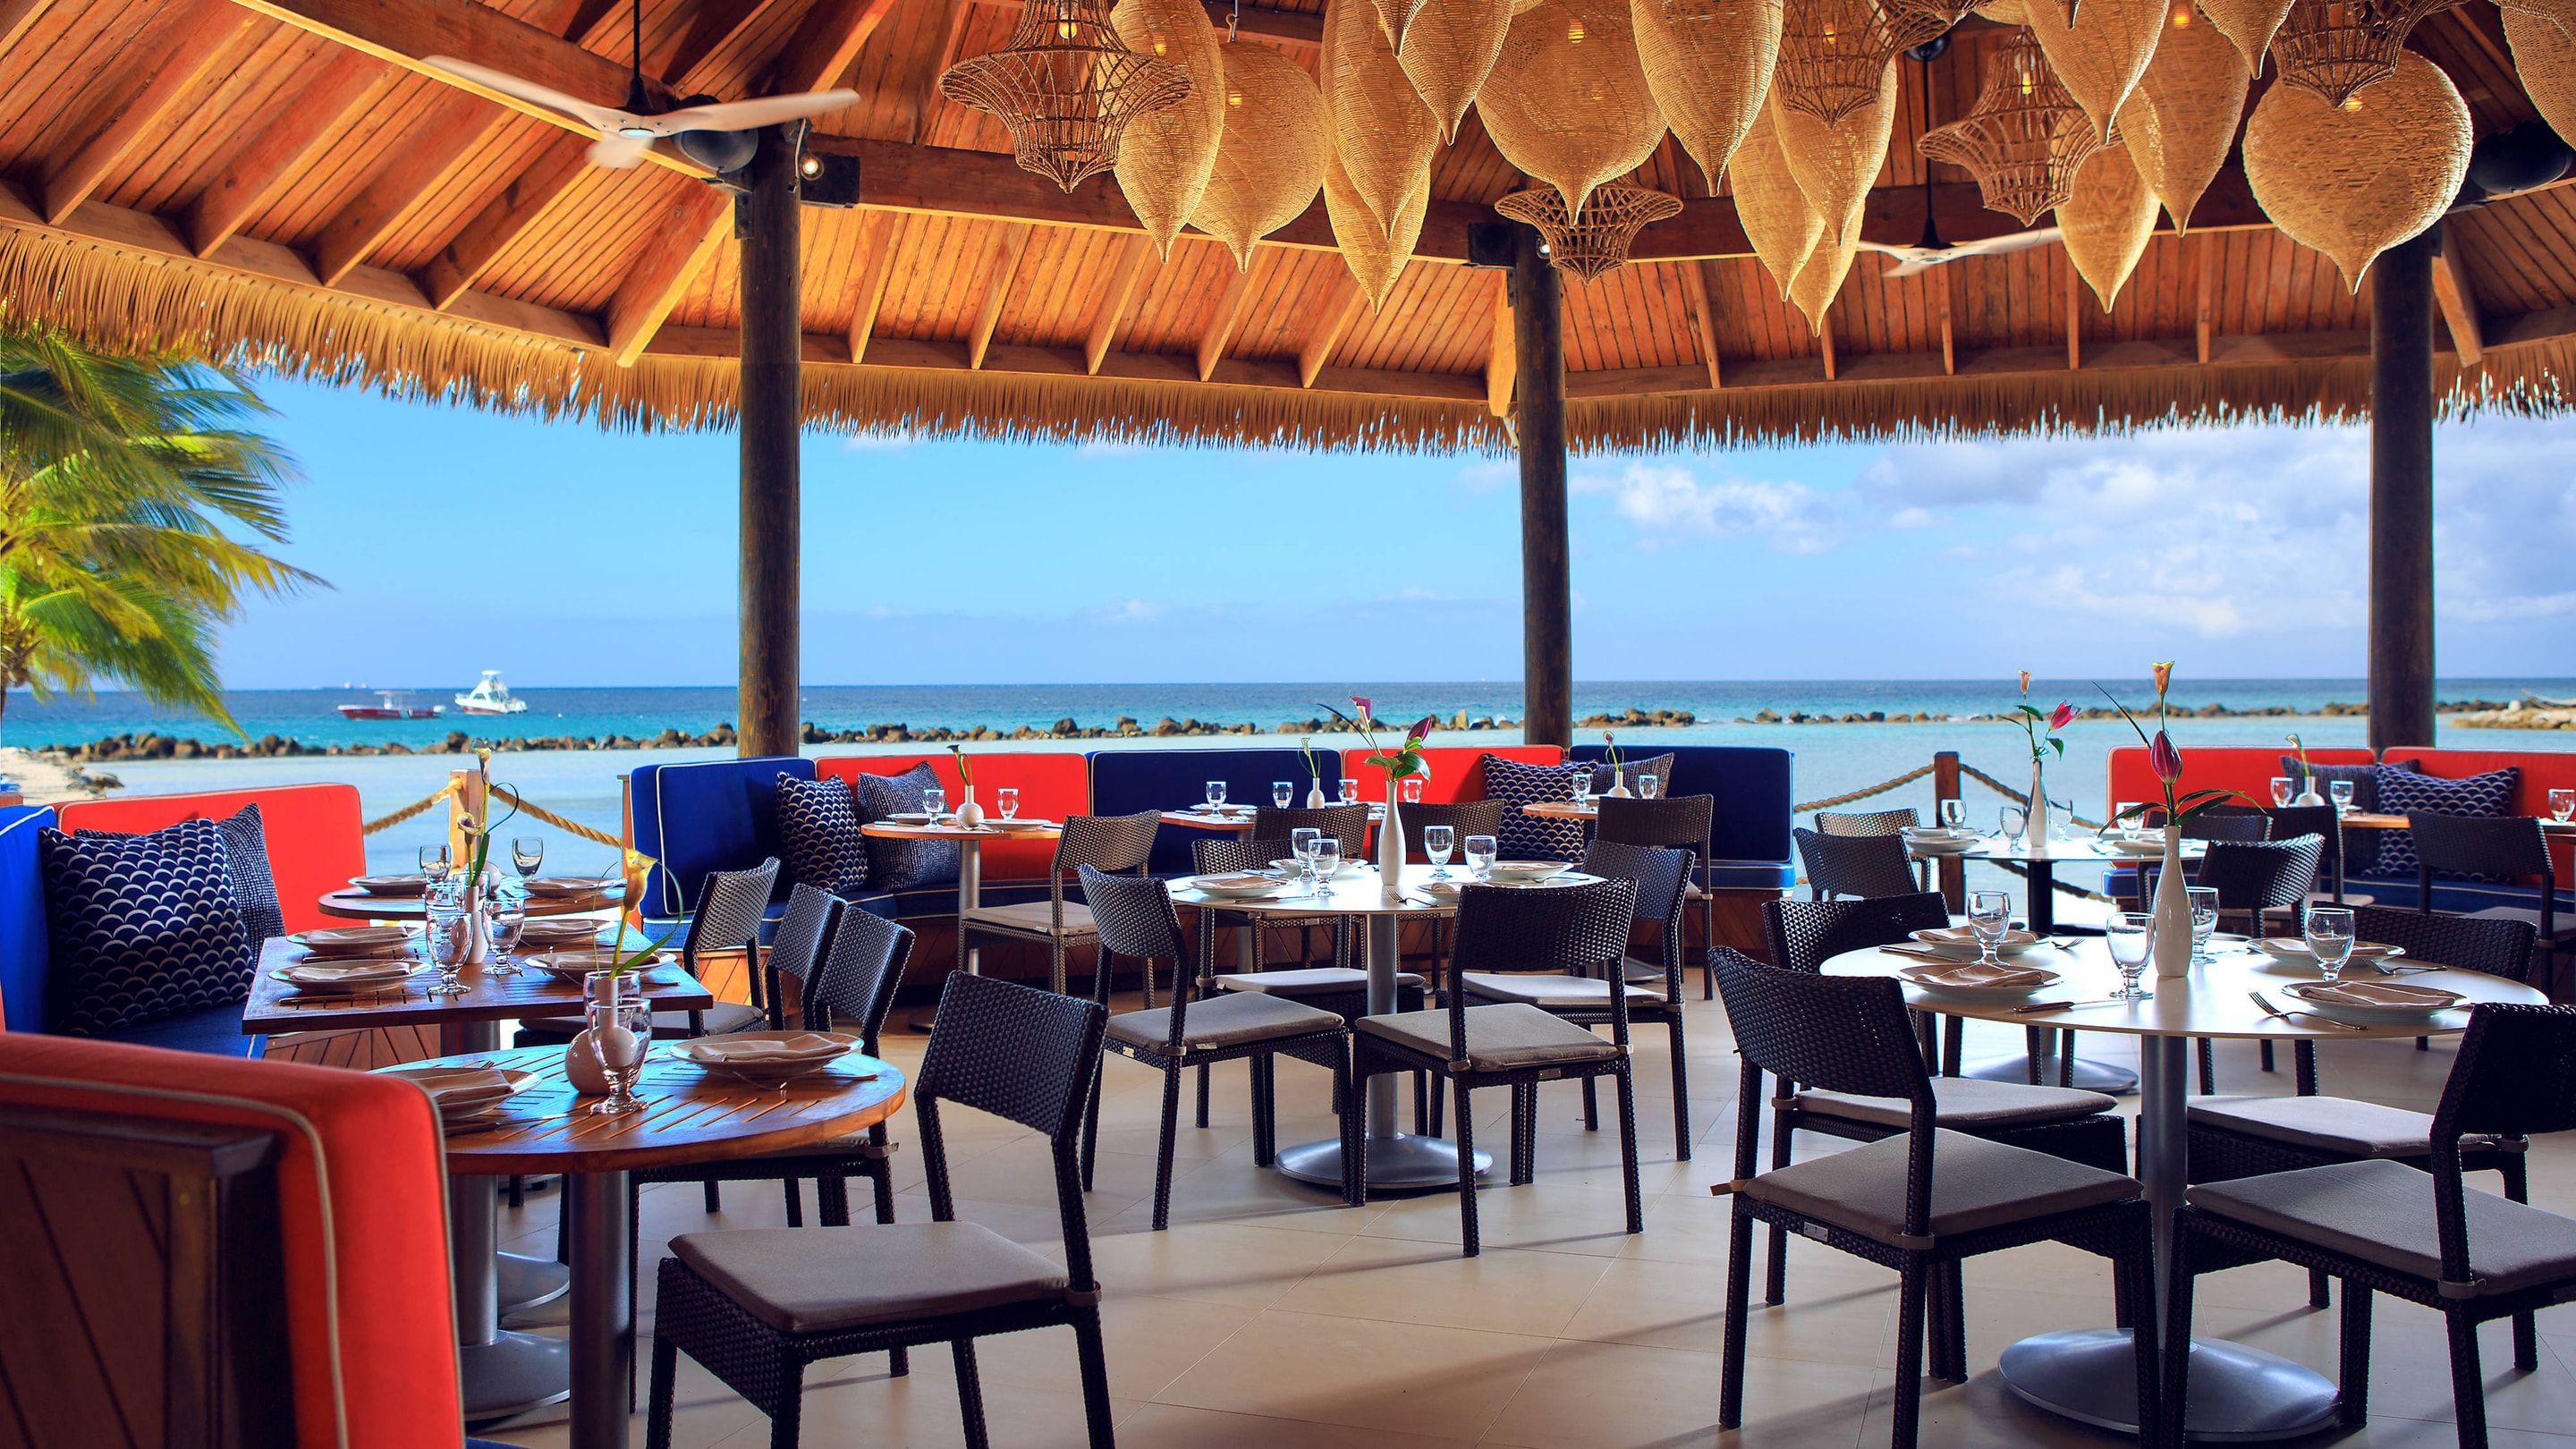 Aruba Island Dining